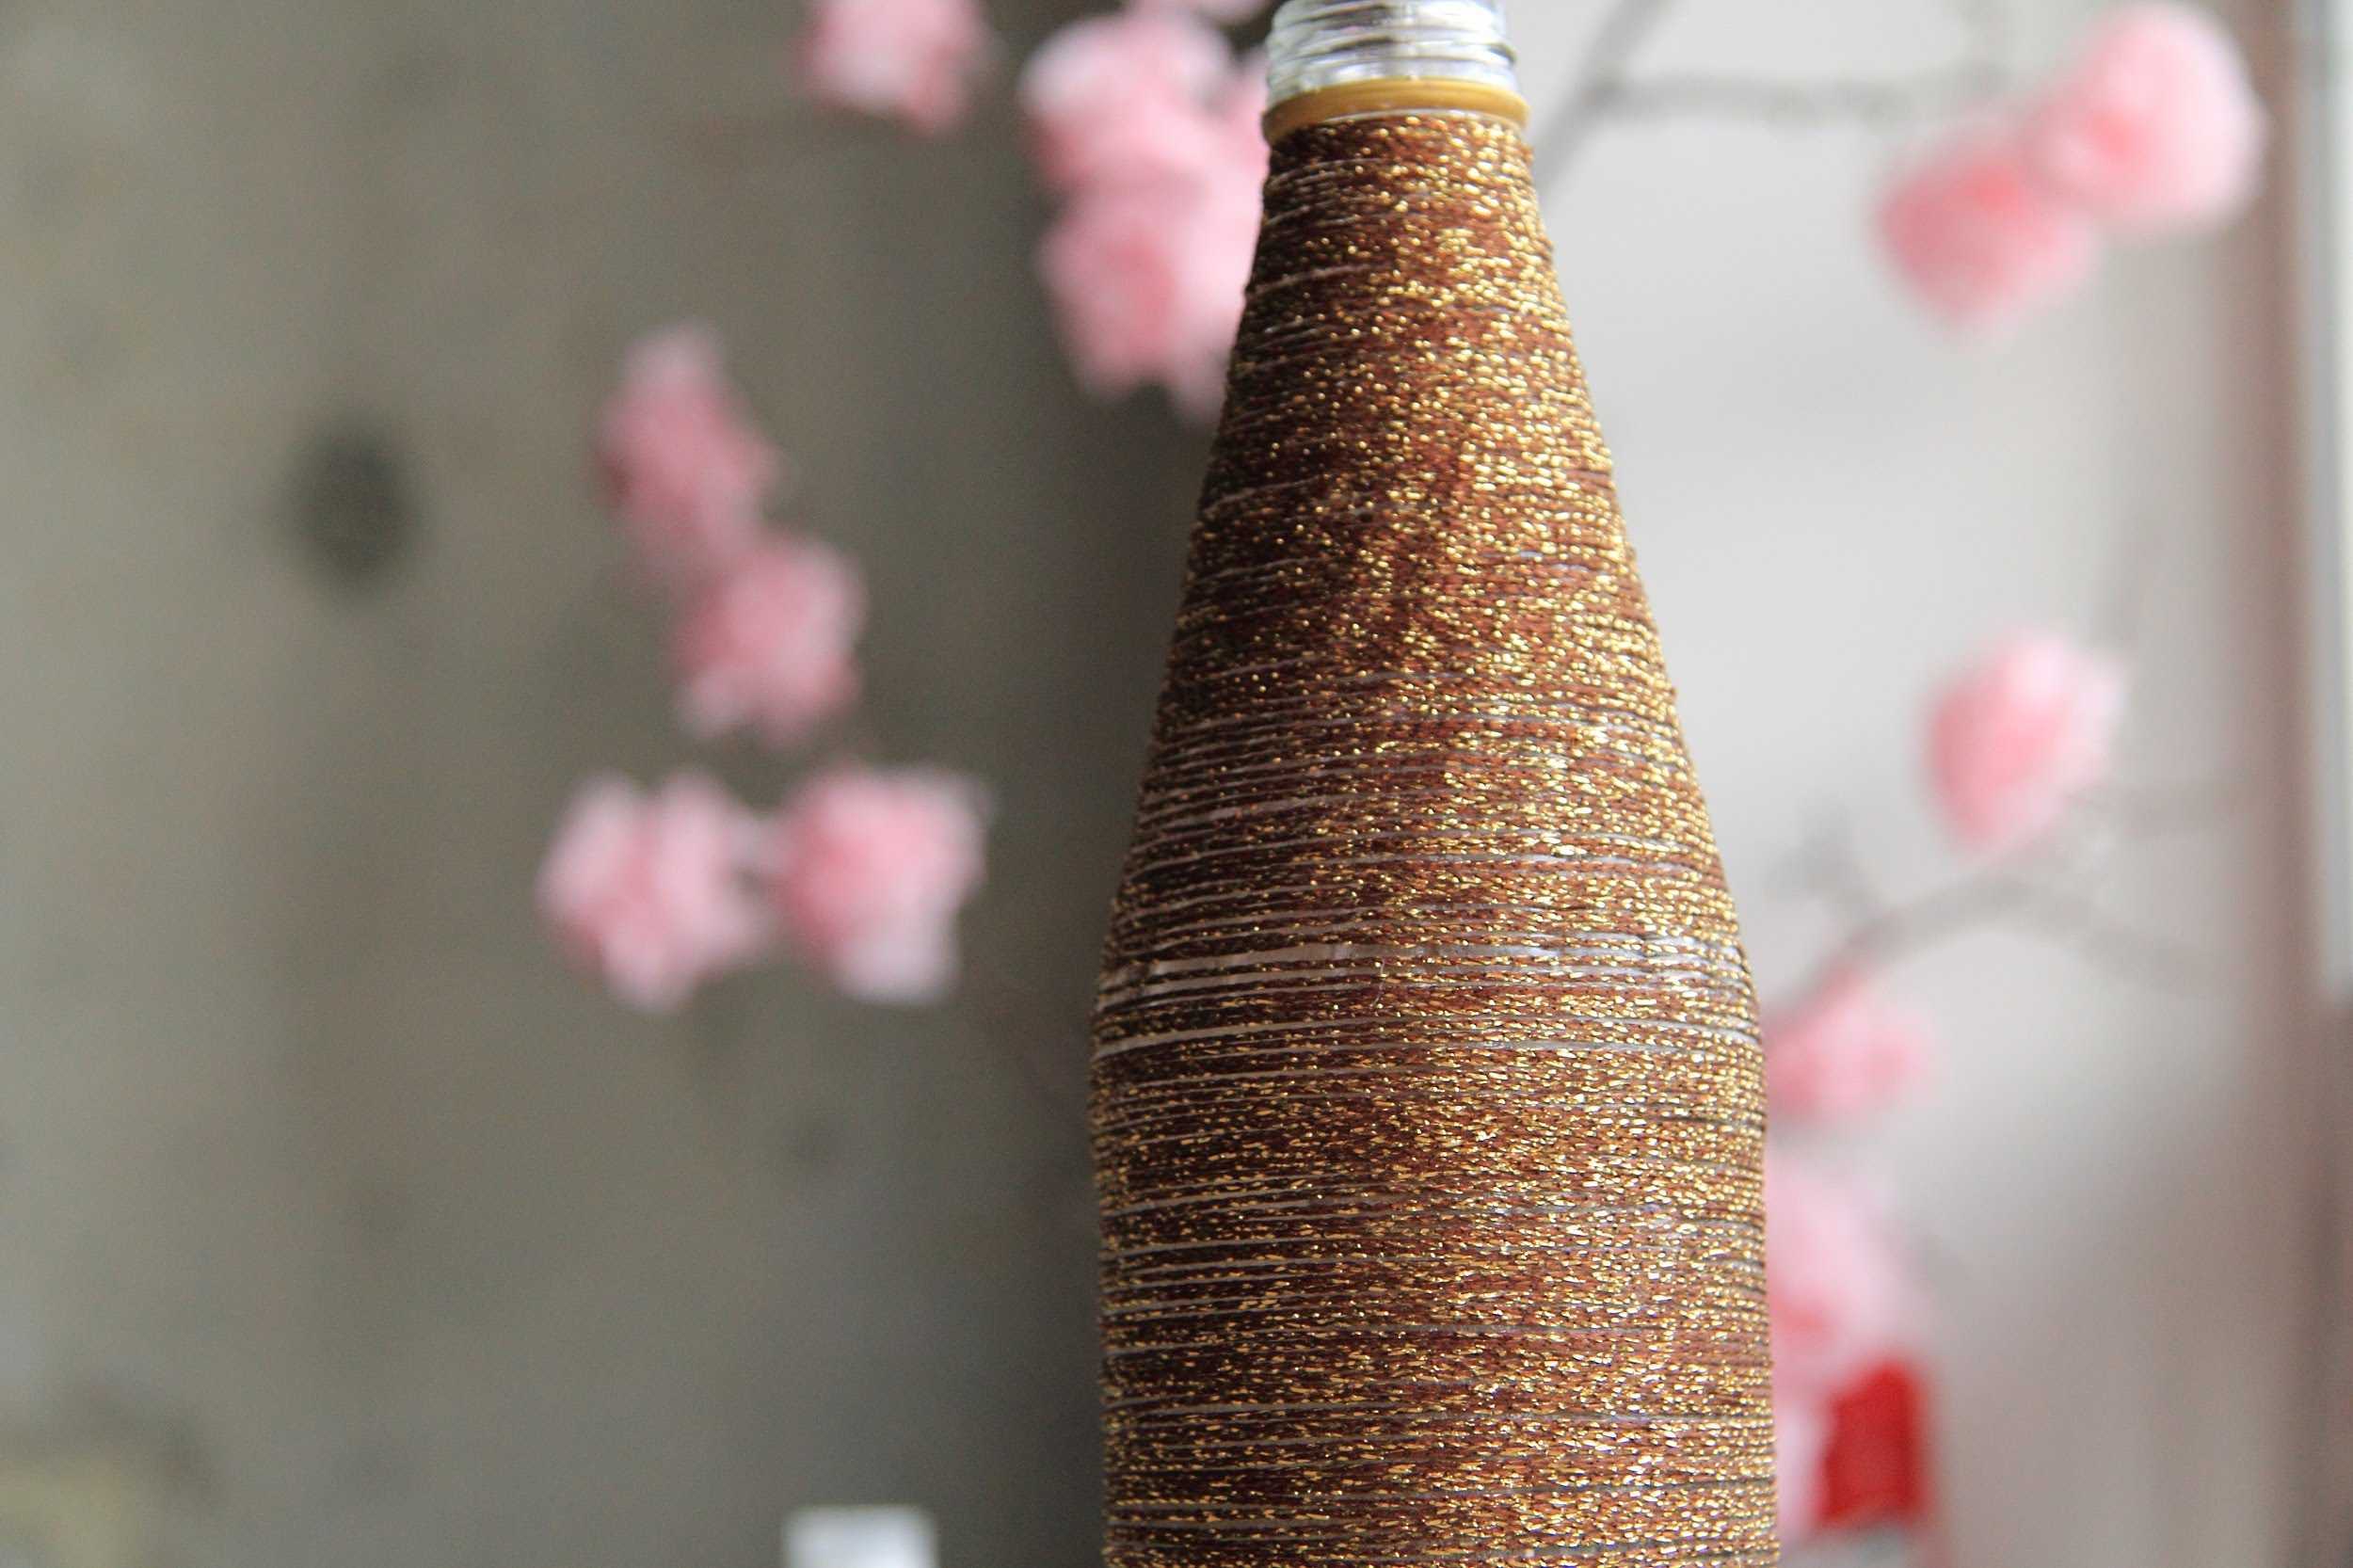 Декор вазы своими руками (39 фото): как украсить напольную вазу для цветов сухими ветками и ракушками в домашних условиях